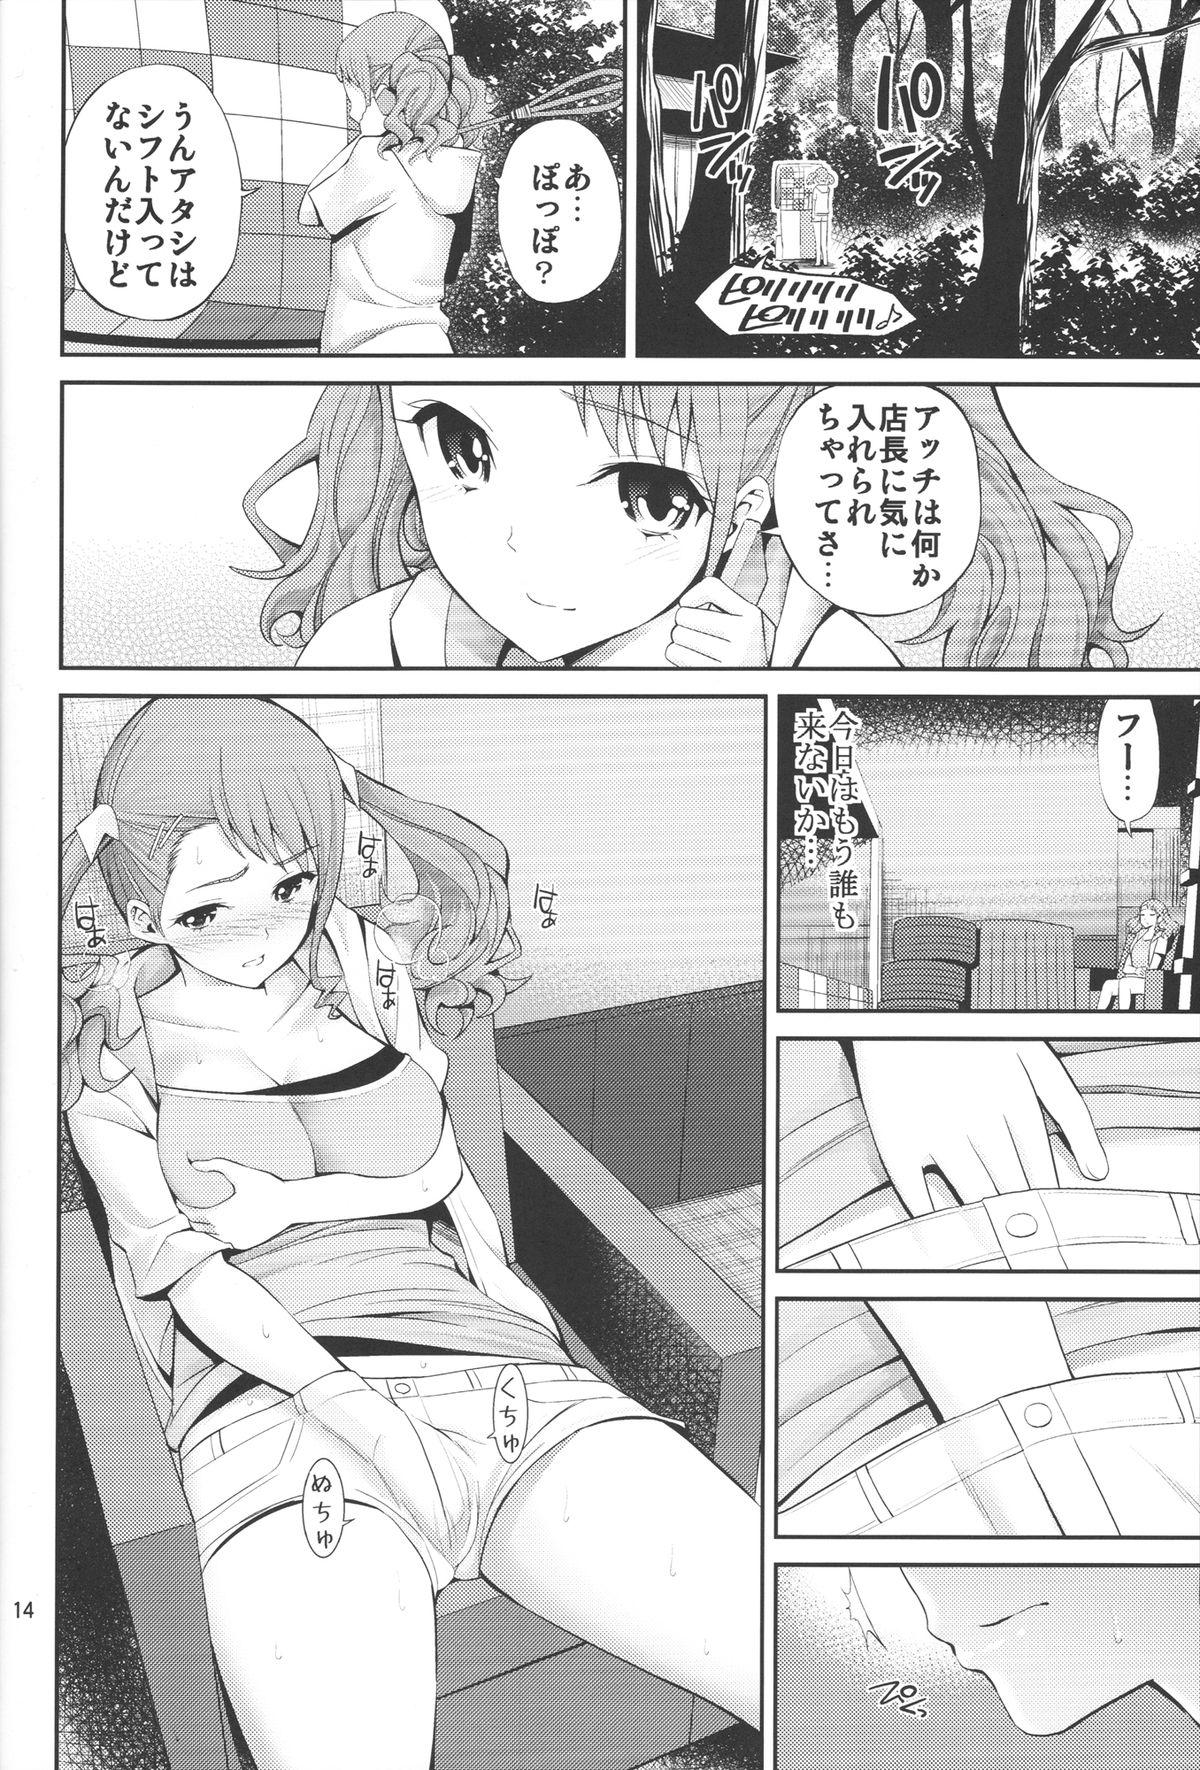 Ano Anaru no Sundome Manga o Bokutachi wa Mada Shiranai. 12